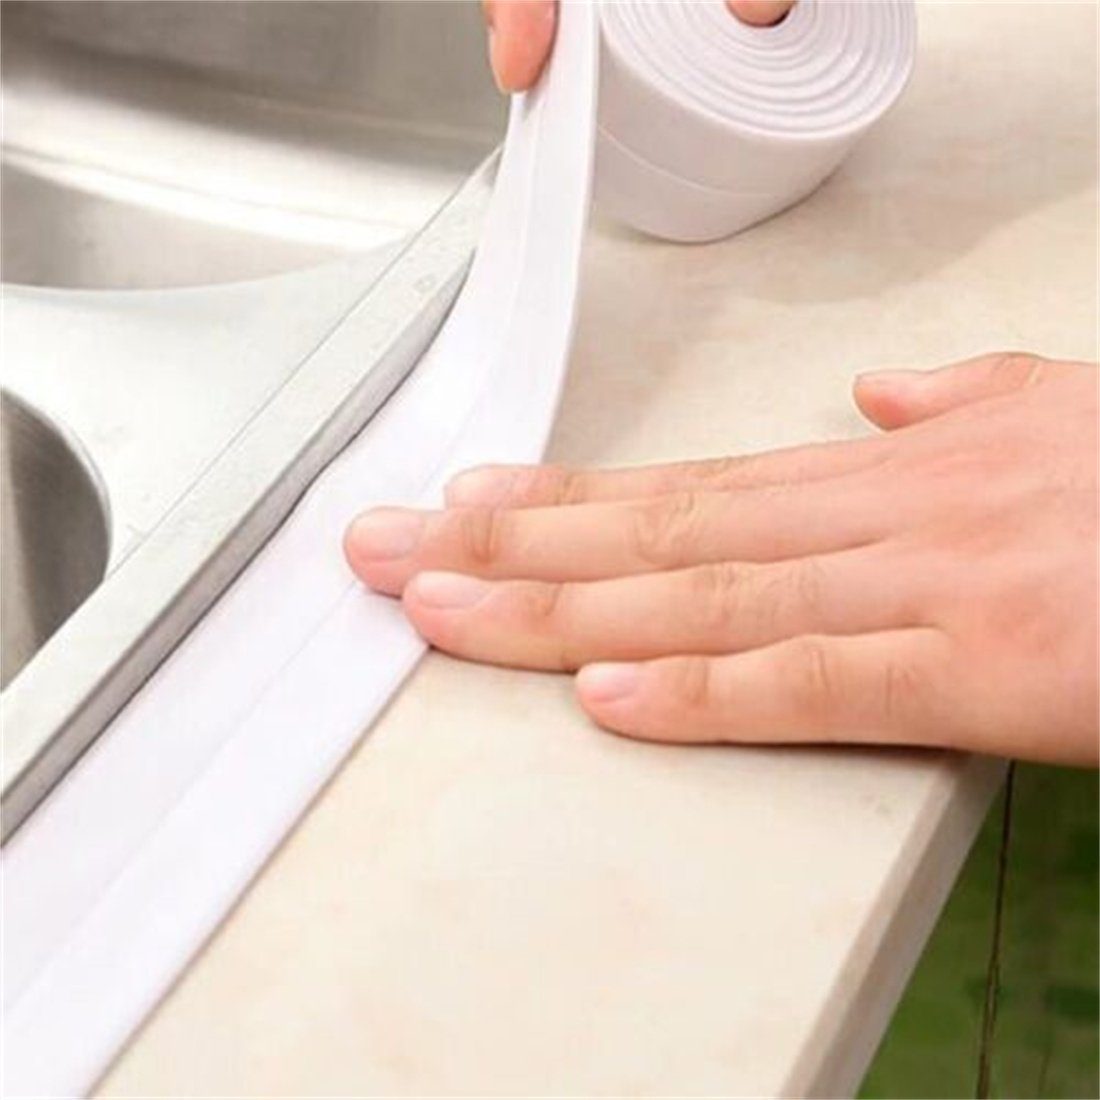 selbstklebend Badezimmer Dusche Klebeband Küche Wanne breit3.8cm DÖRÖY Wannendichtband